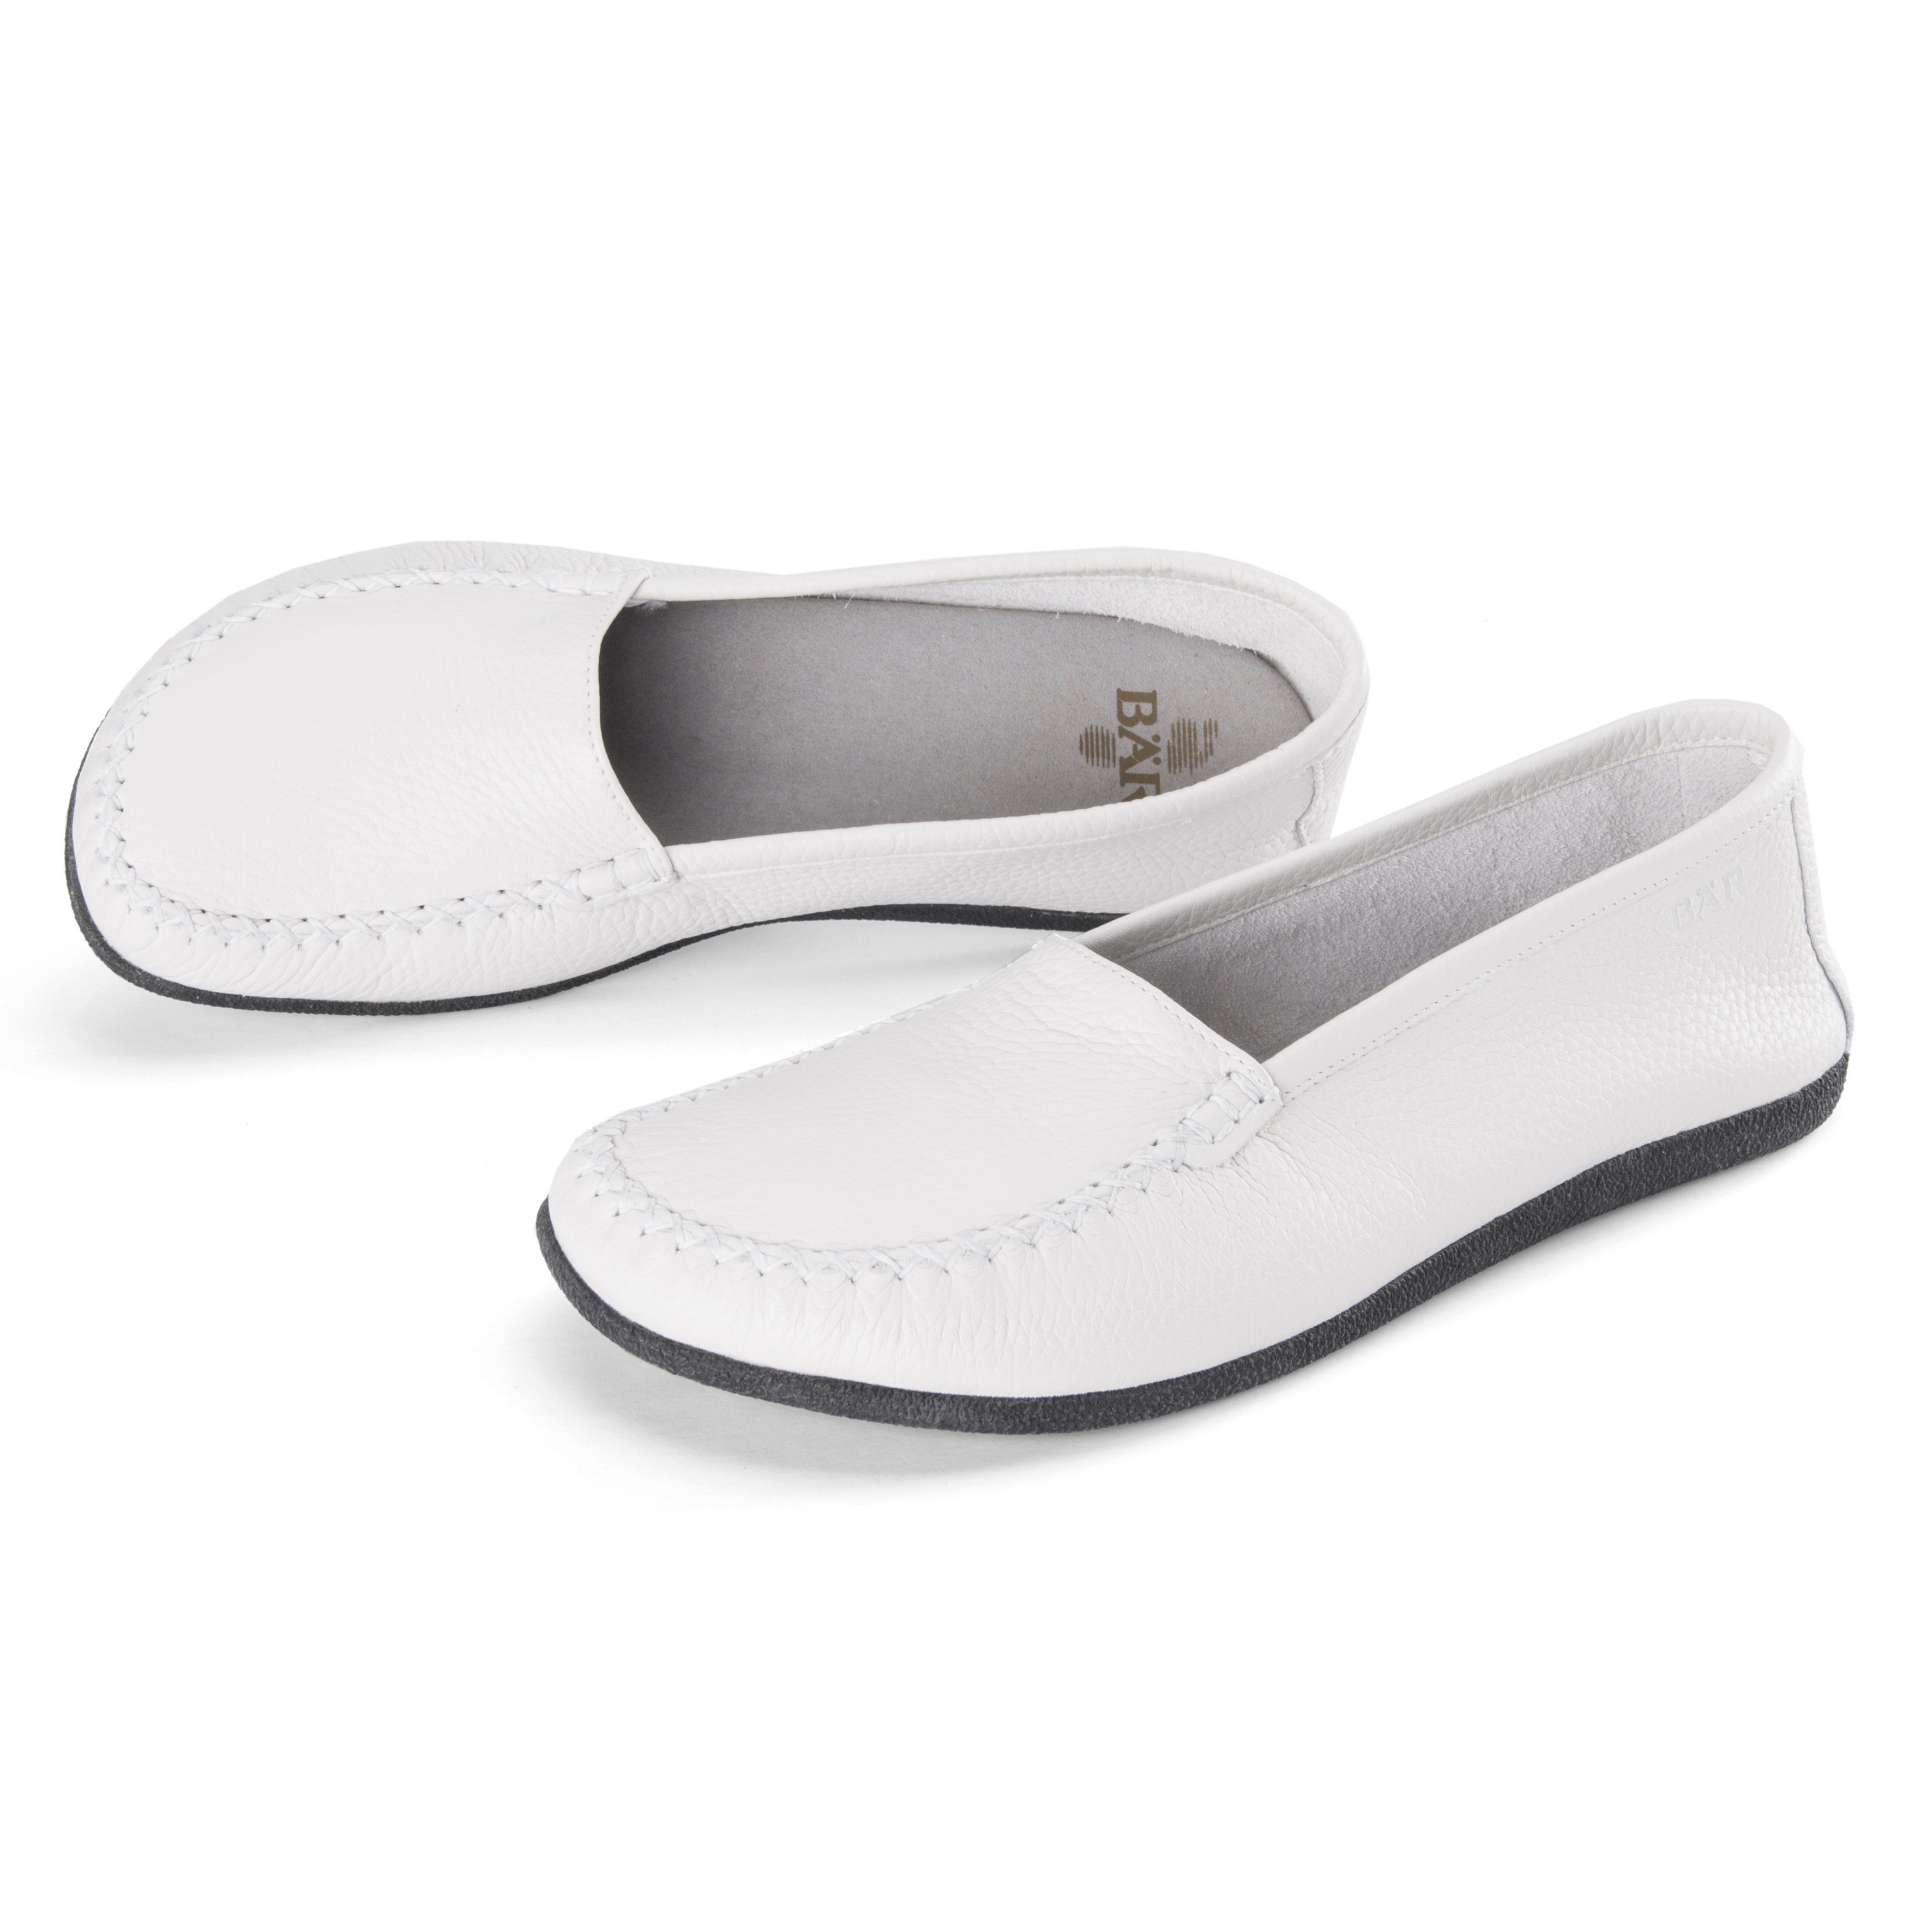 BÄR Schuhe Herrenschuh / Damenschuh - Modell San Remo in der Farbe Weiß  Mokassin Aus echtem Leder